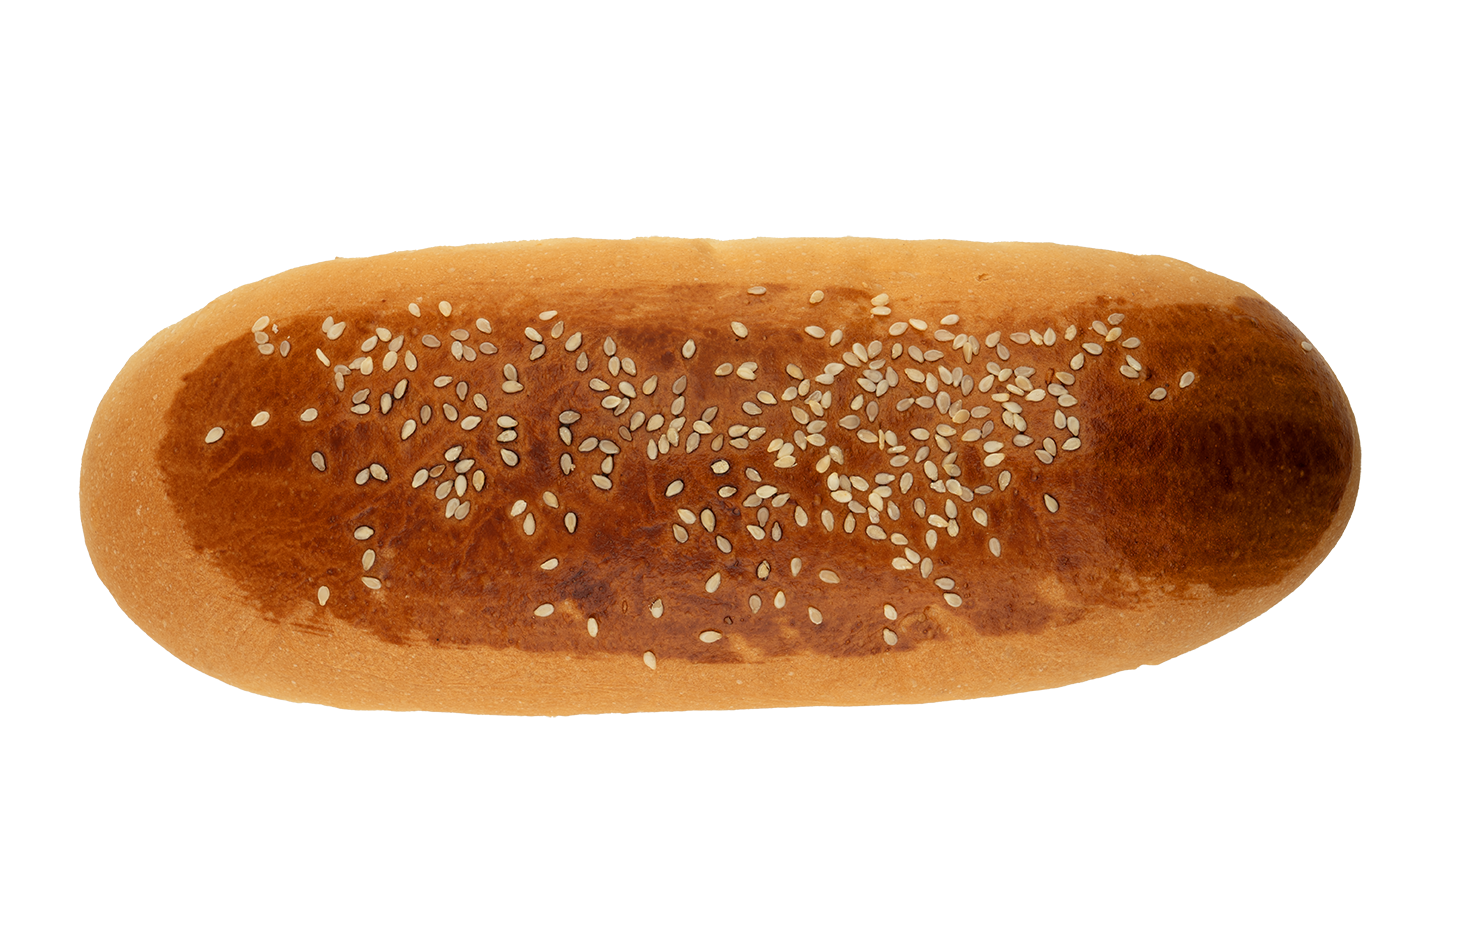 PaneStella gurme sandviç ekmeği